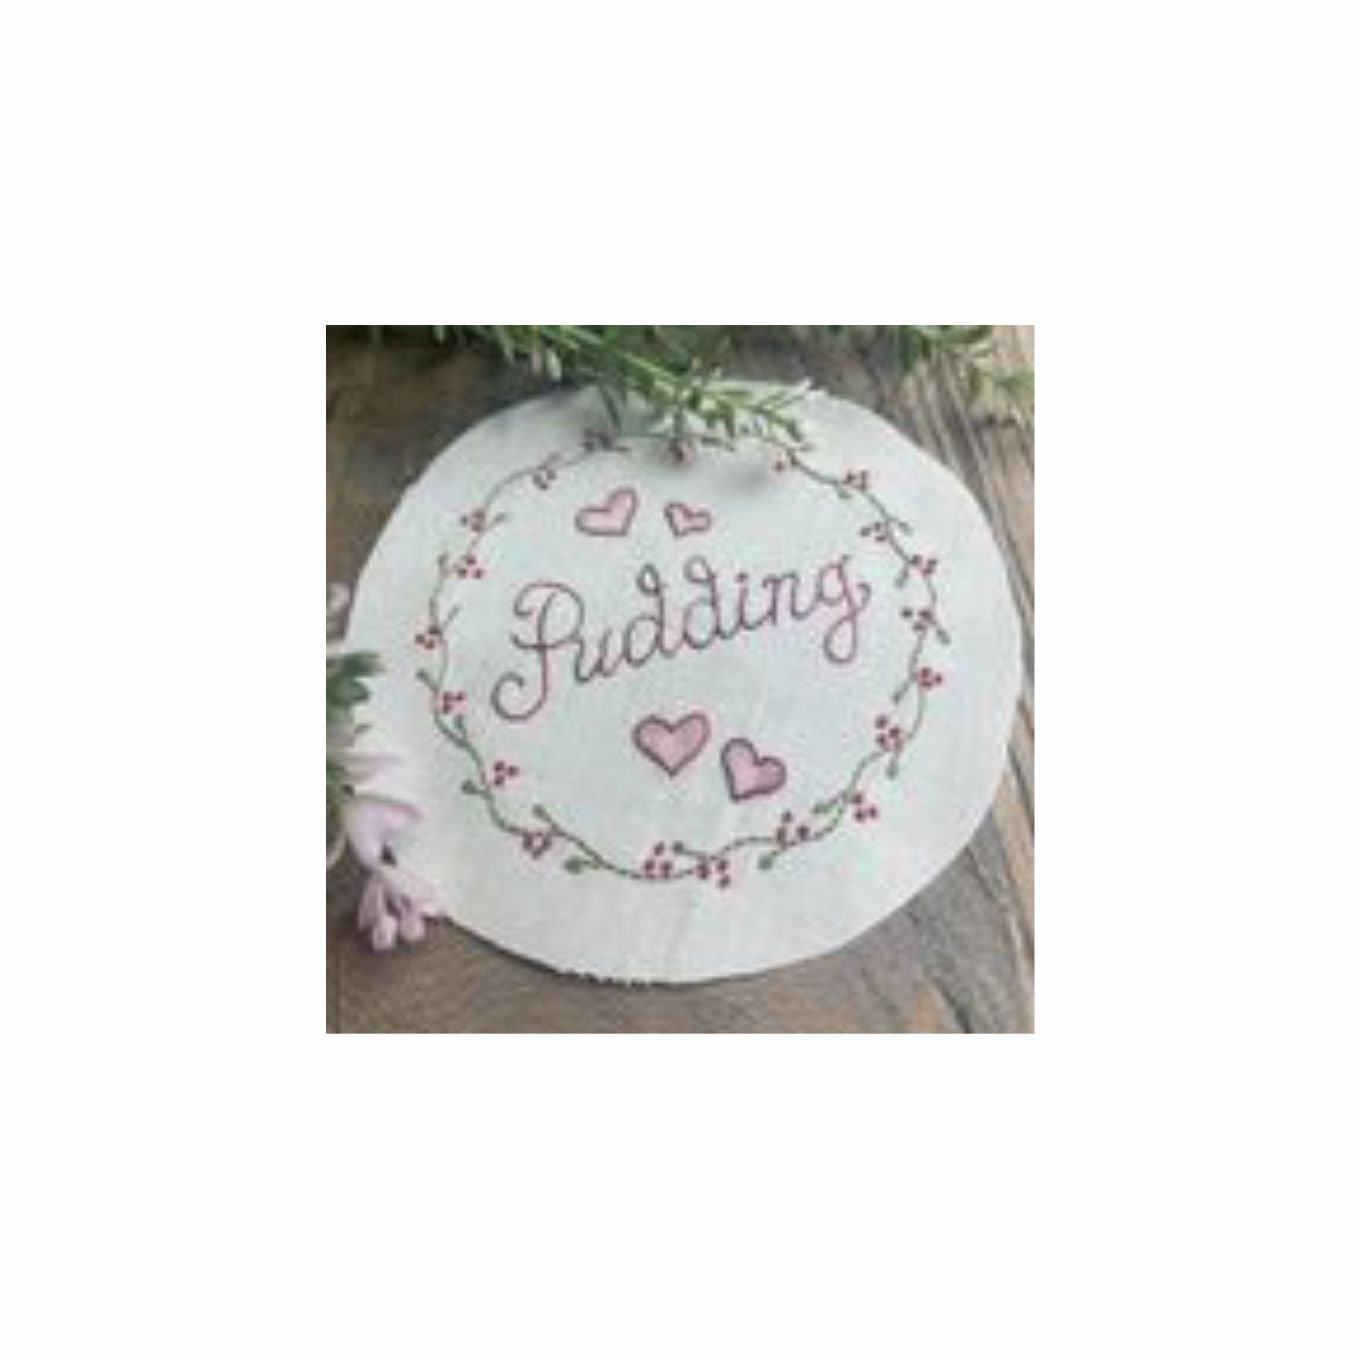 Pudding word stitchery - Downloadable pattern